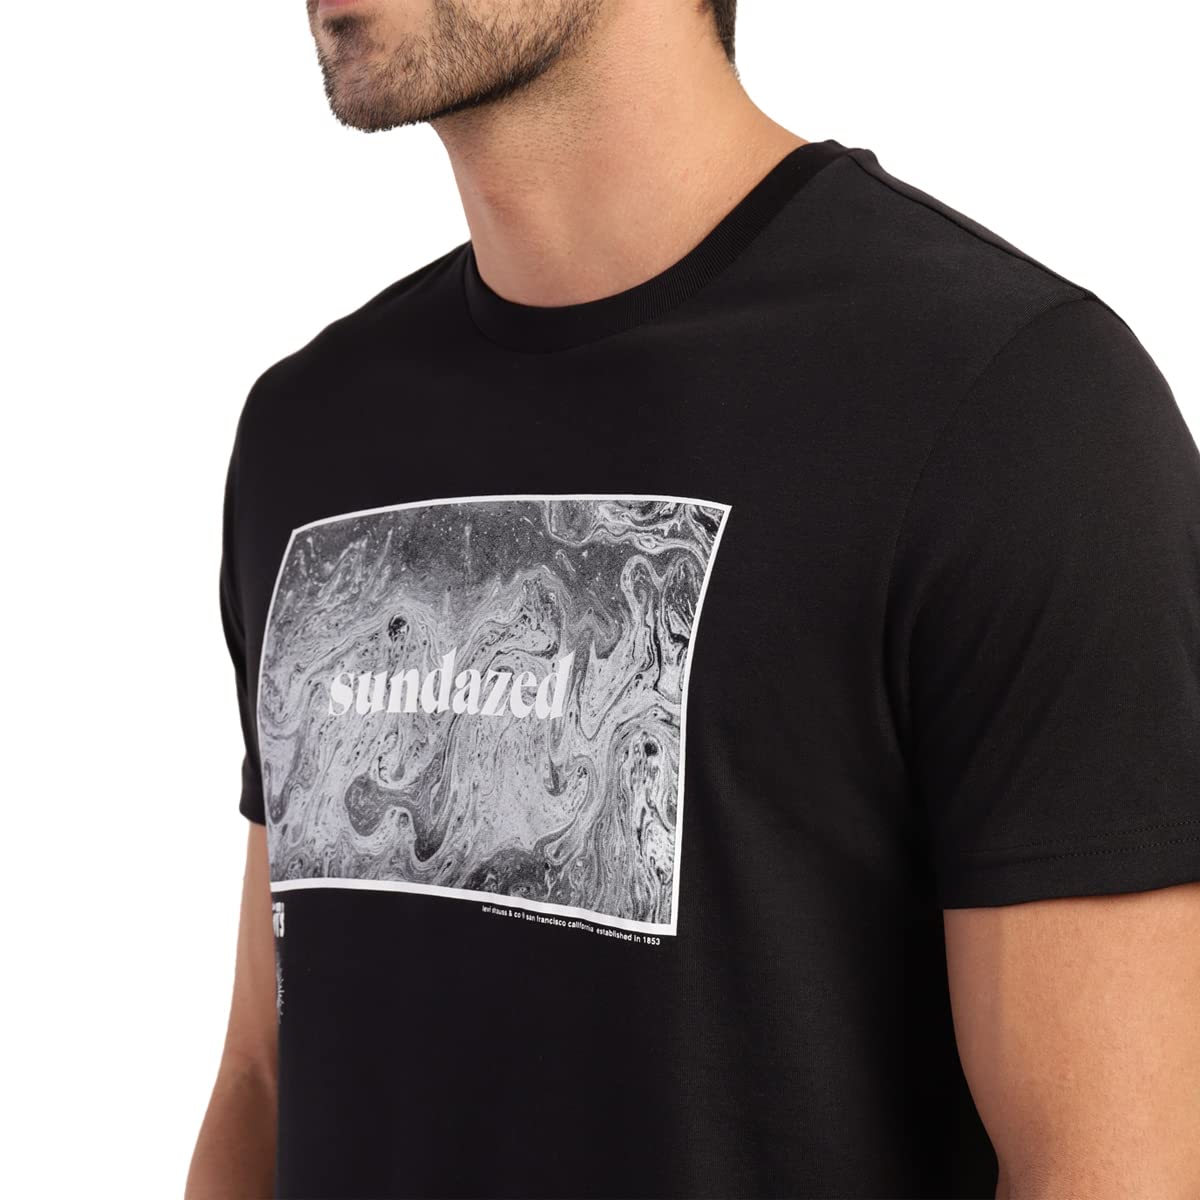 Levi's Men's Graphic Regular Fit T-Shirt (16960-0939_Black Beauty S)